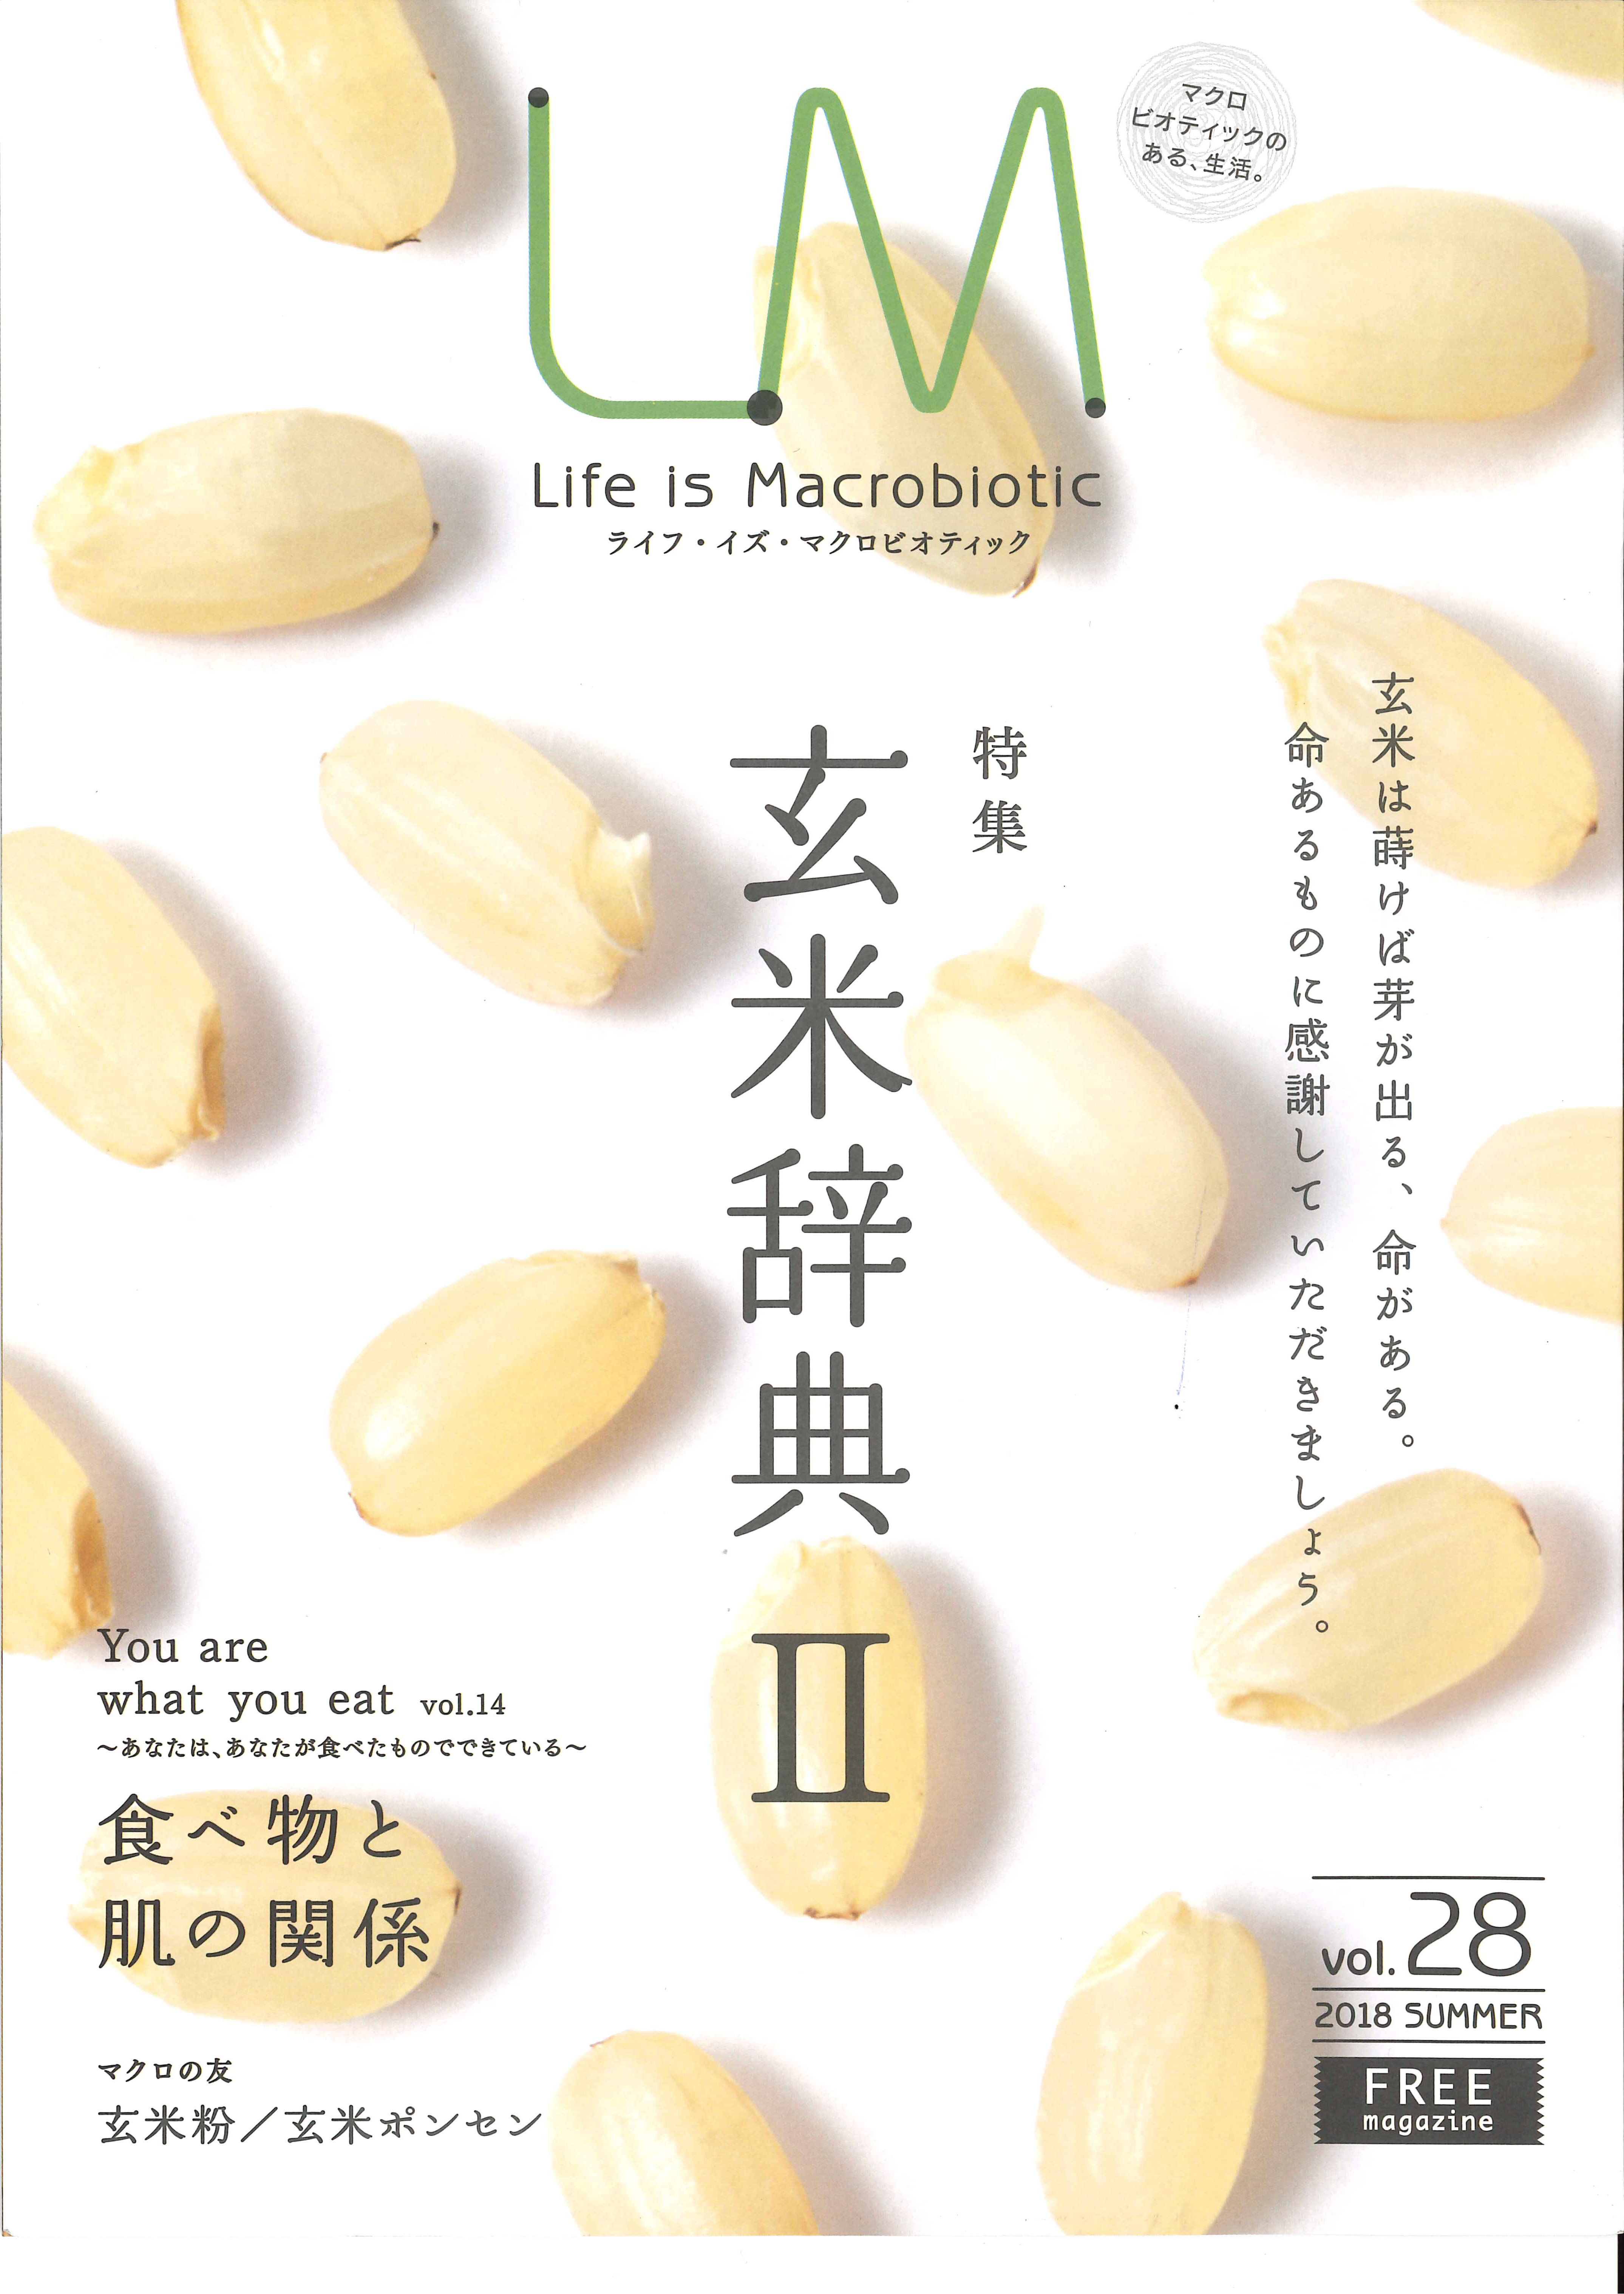 Life is Macrobiotic